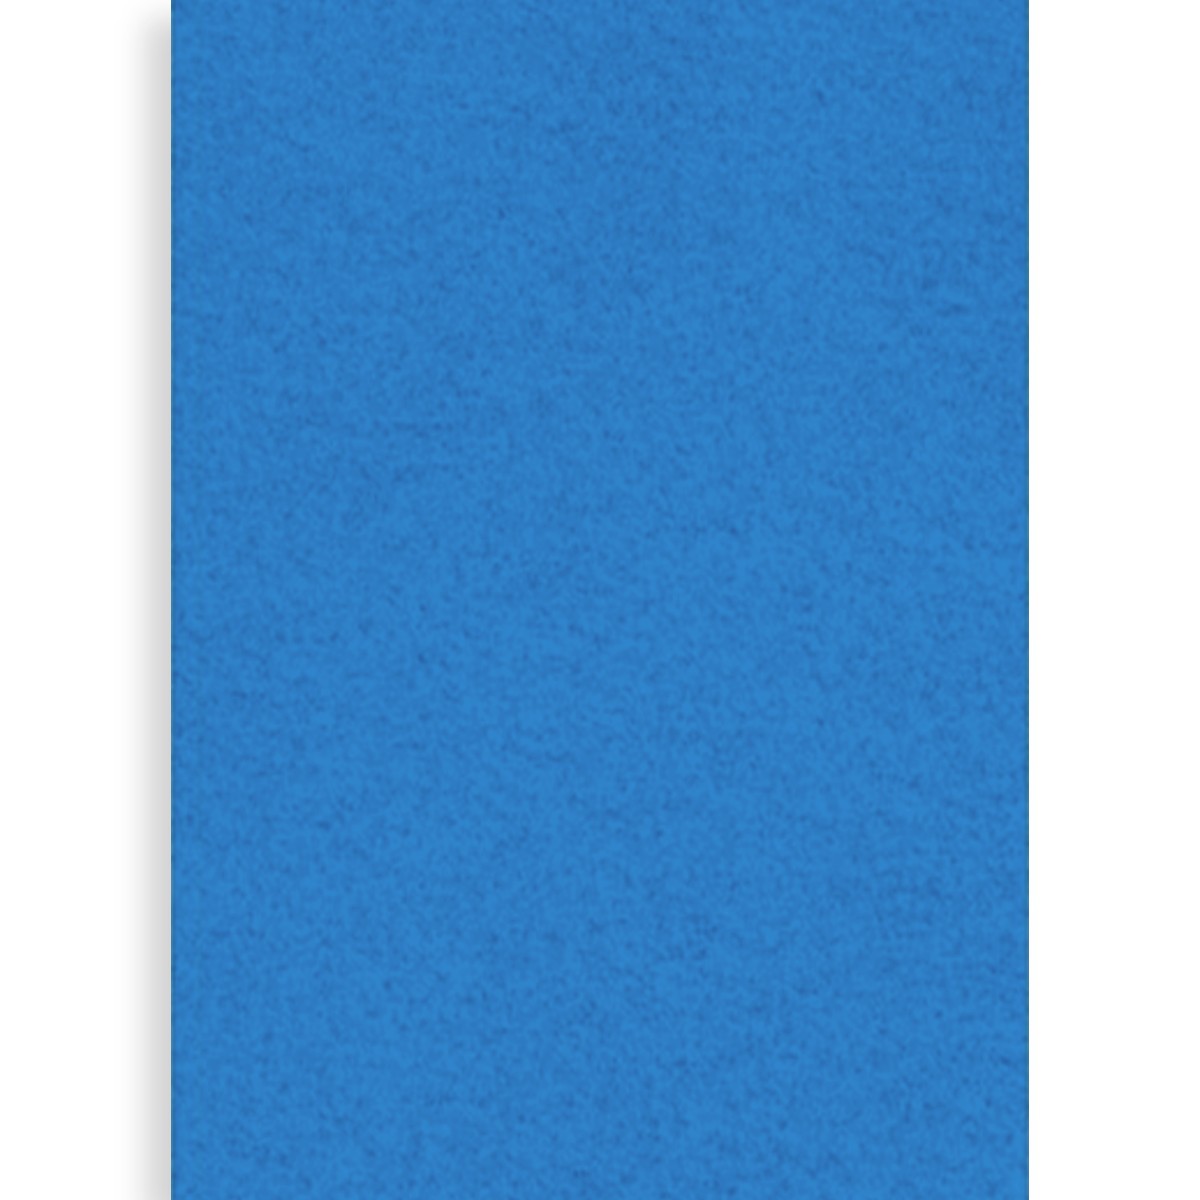 Pasla tare albastru regal 40x60cm x 1 5mm MP PN678